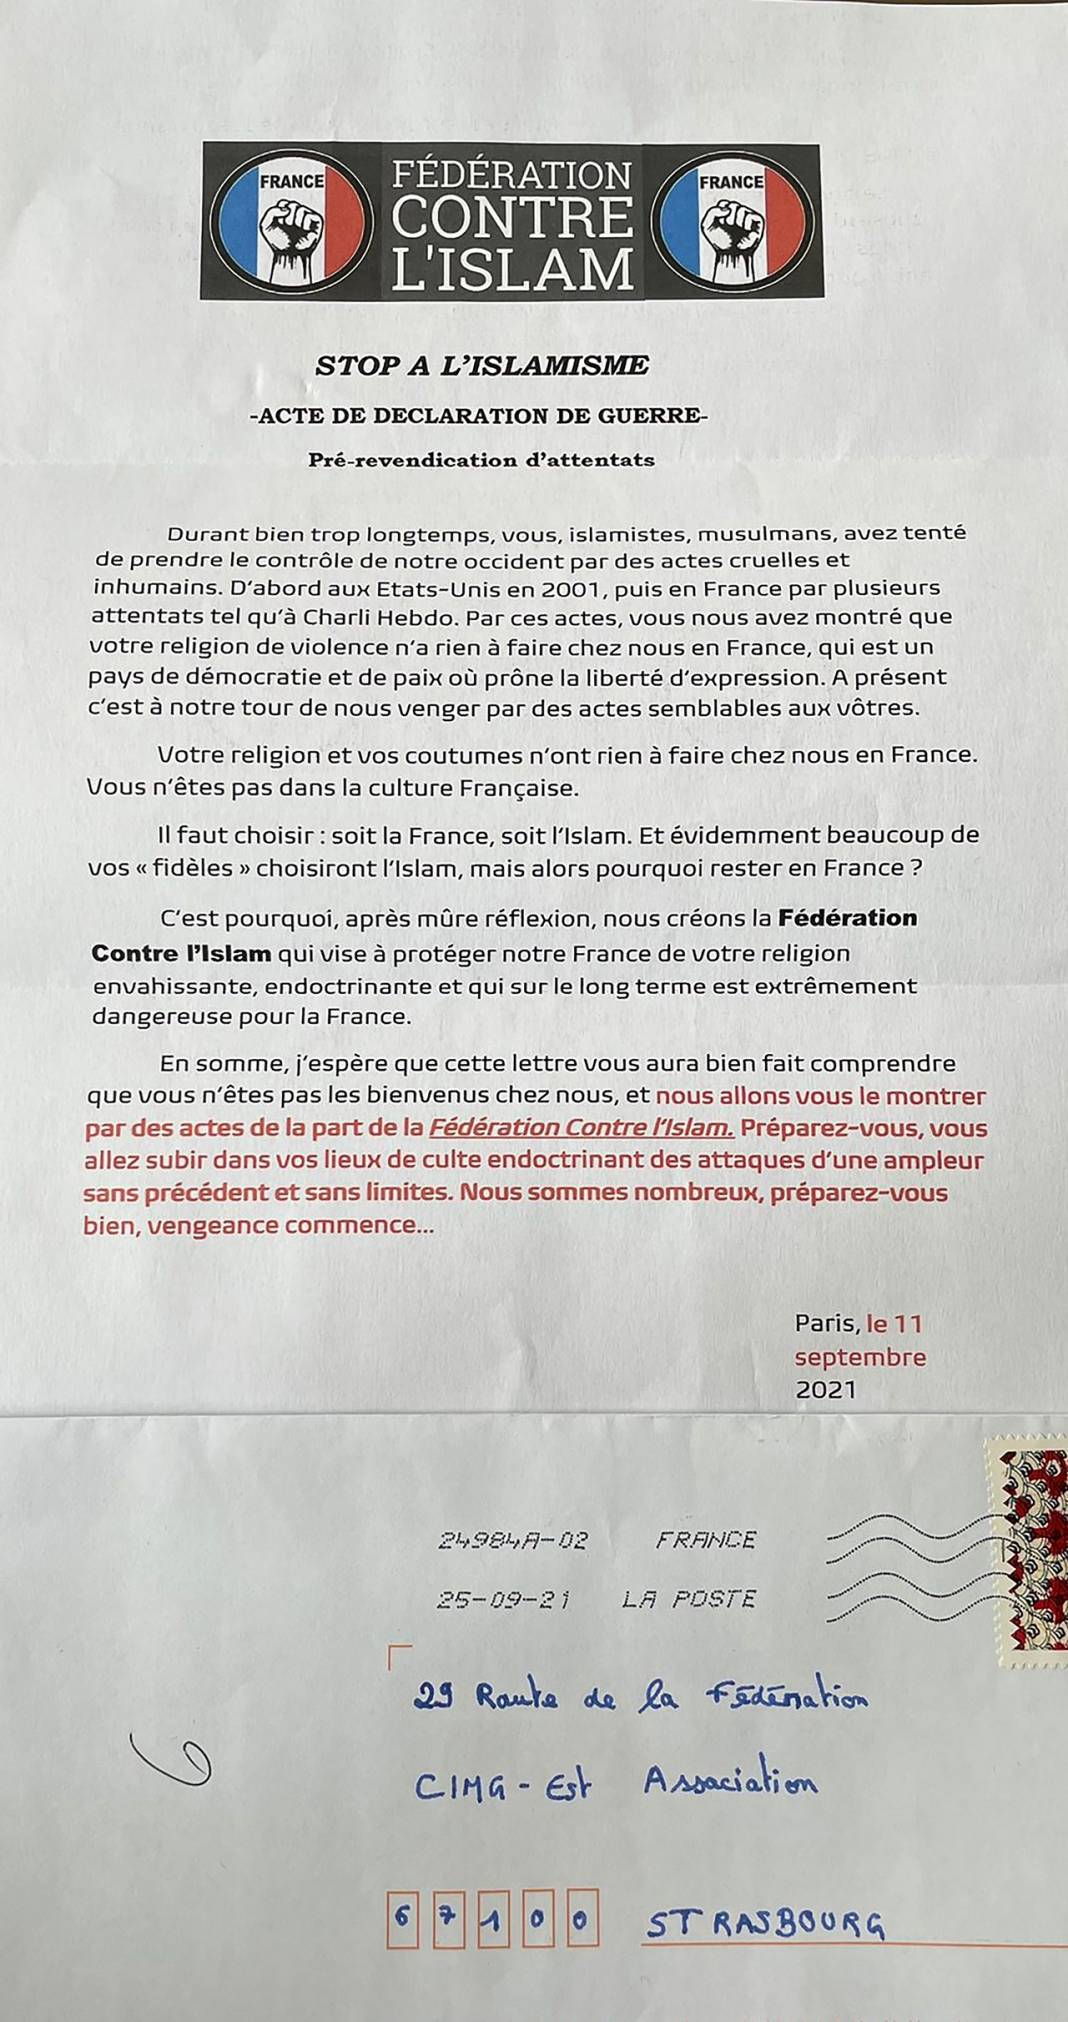 Fransa'da yapımı devam eden, Avrupa'nın en büyük camisine tehdit mektubu 14